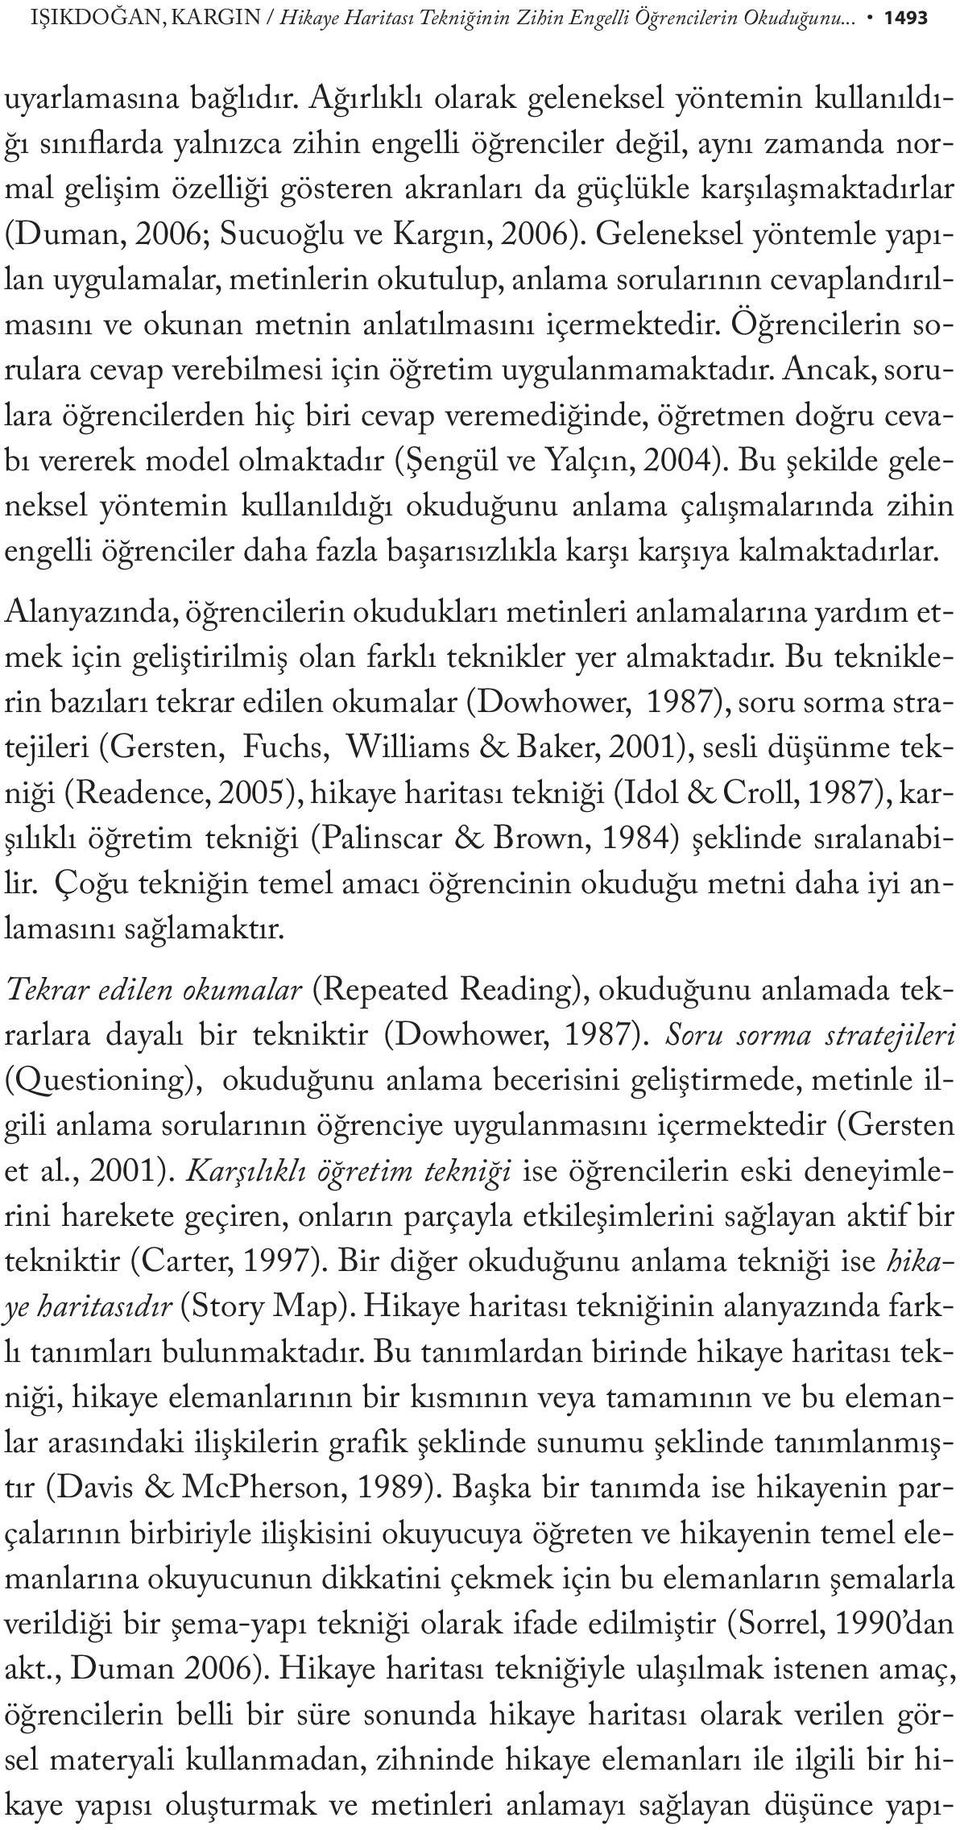 2006; Sucuoğlu ve Kargın, 2006). Geleneksel yöntemle yapılan uygulamalar, metinlerin okutulup, anlama sorularının cevaplandırılmasını ve okunan metnin anlatılmasını içermektedir.